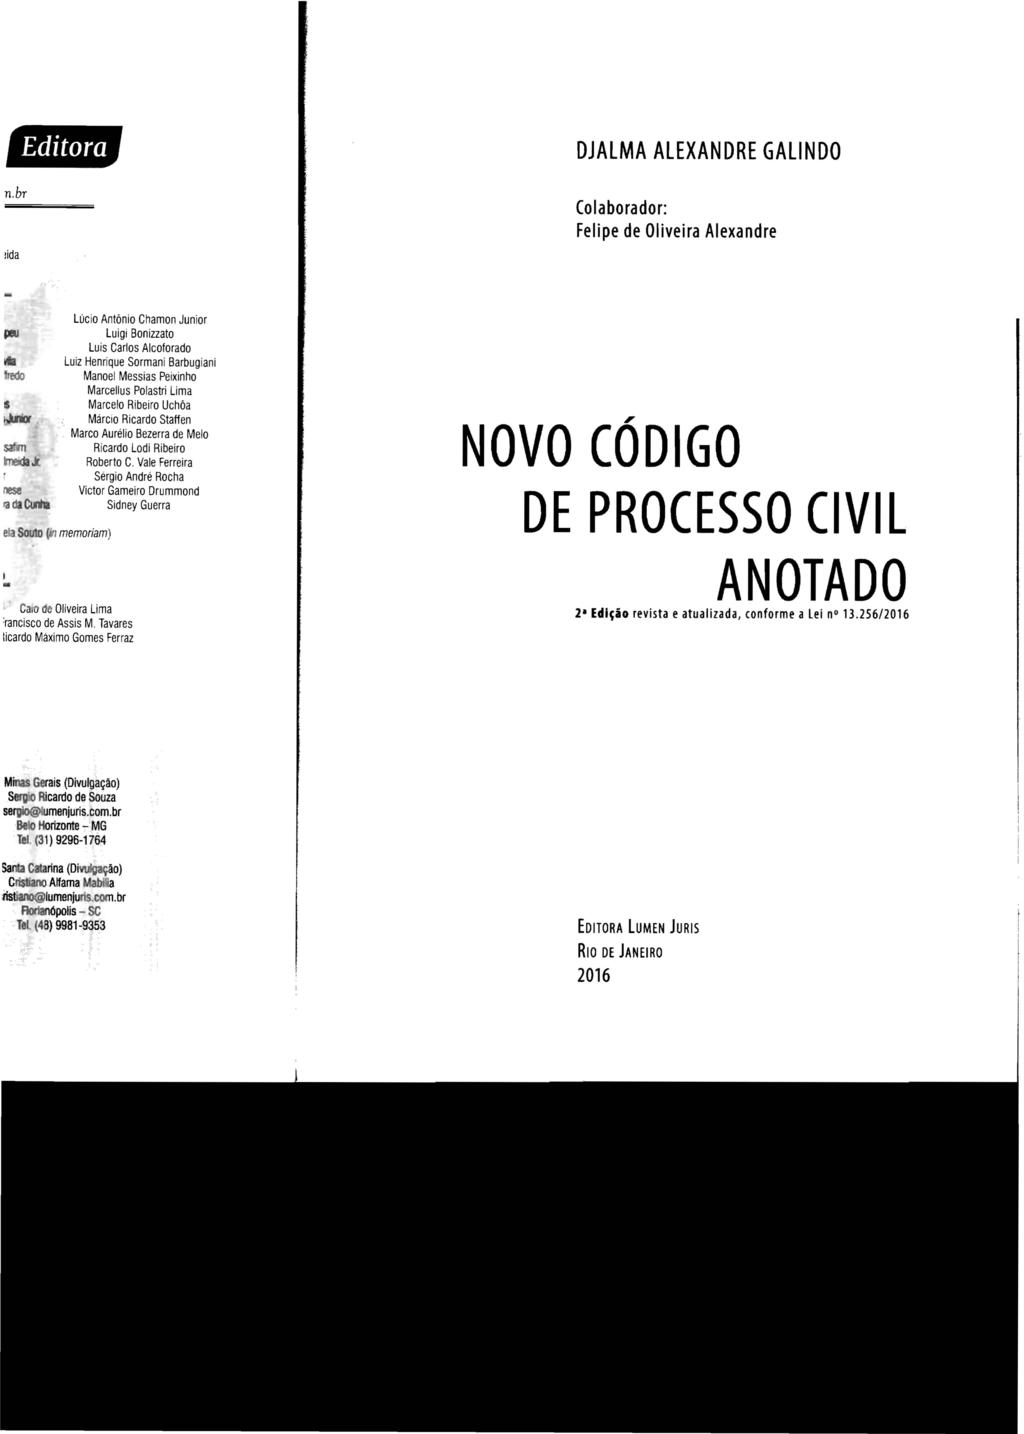 DJALMA ALEXANDRE GALlNDO Colaborador: Felipe de Oliveira Alexandre NOVO CÓDIGO DE PROCESSO CIVIL